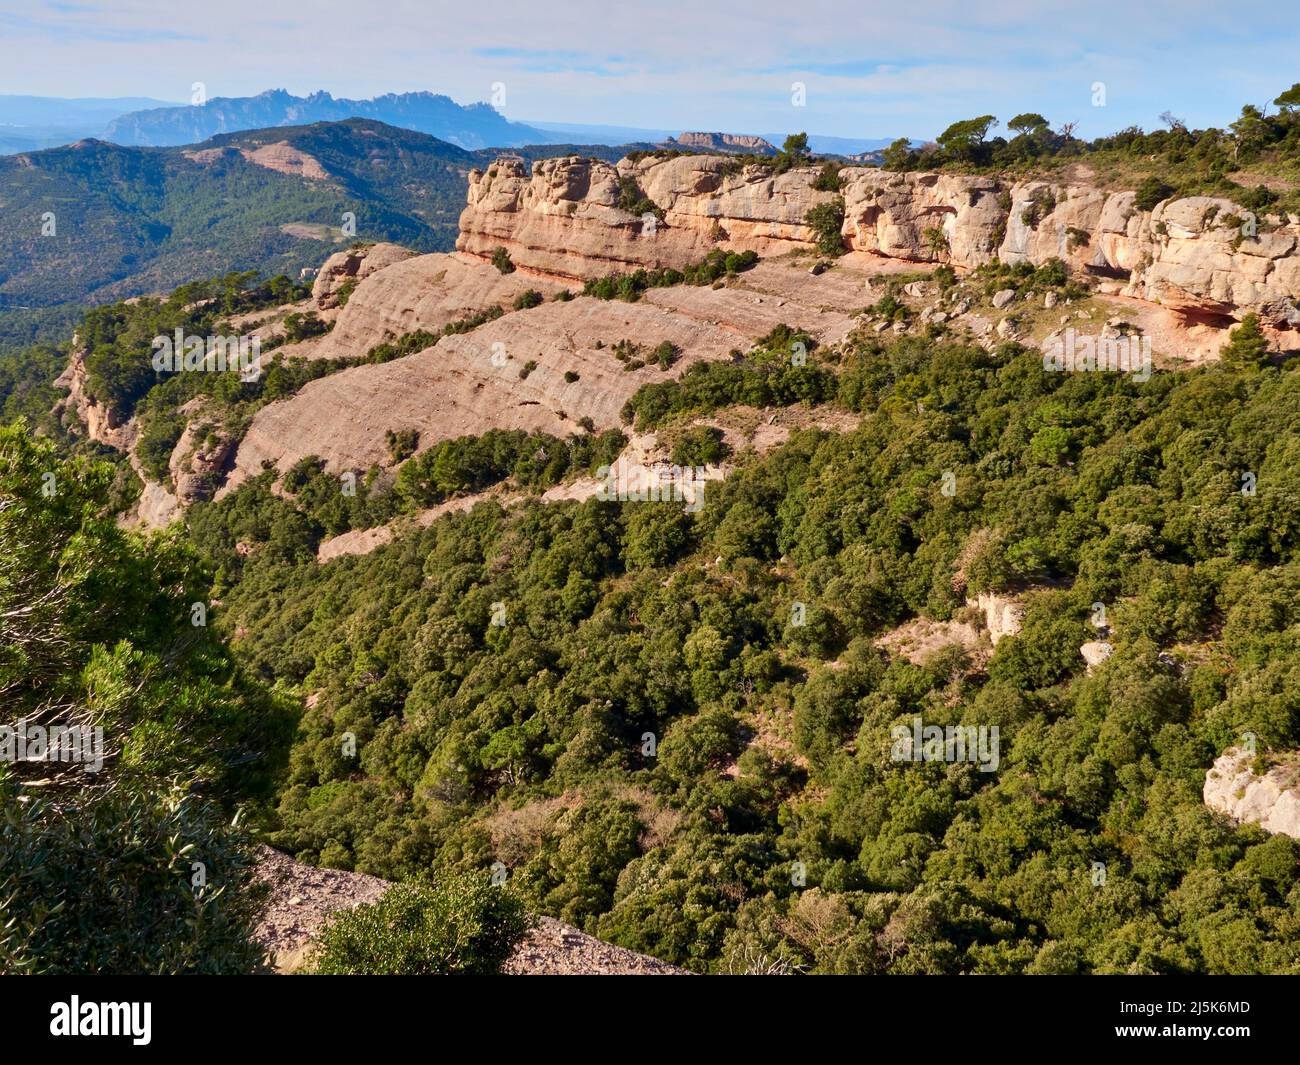 Parco naturale di Sant Llorenc de Munt i l'Obac, Catalogna, Spagna Foto Stock